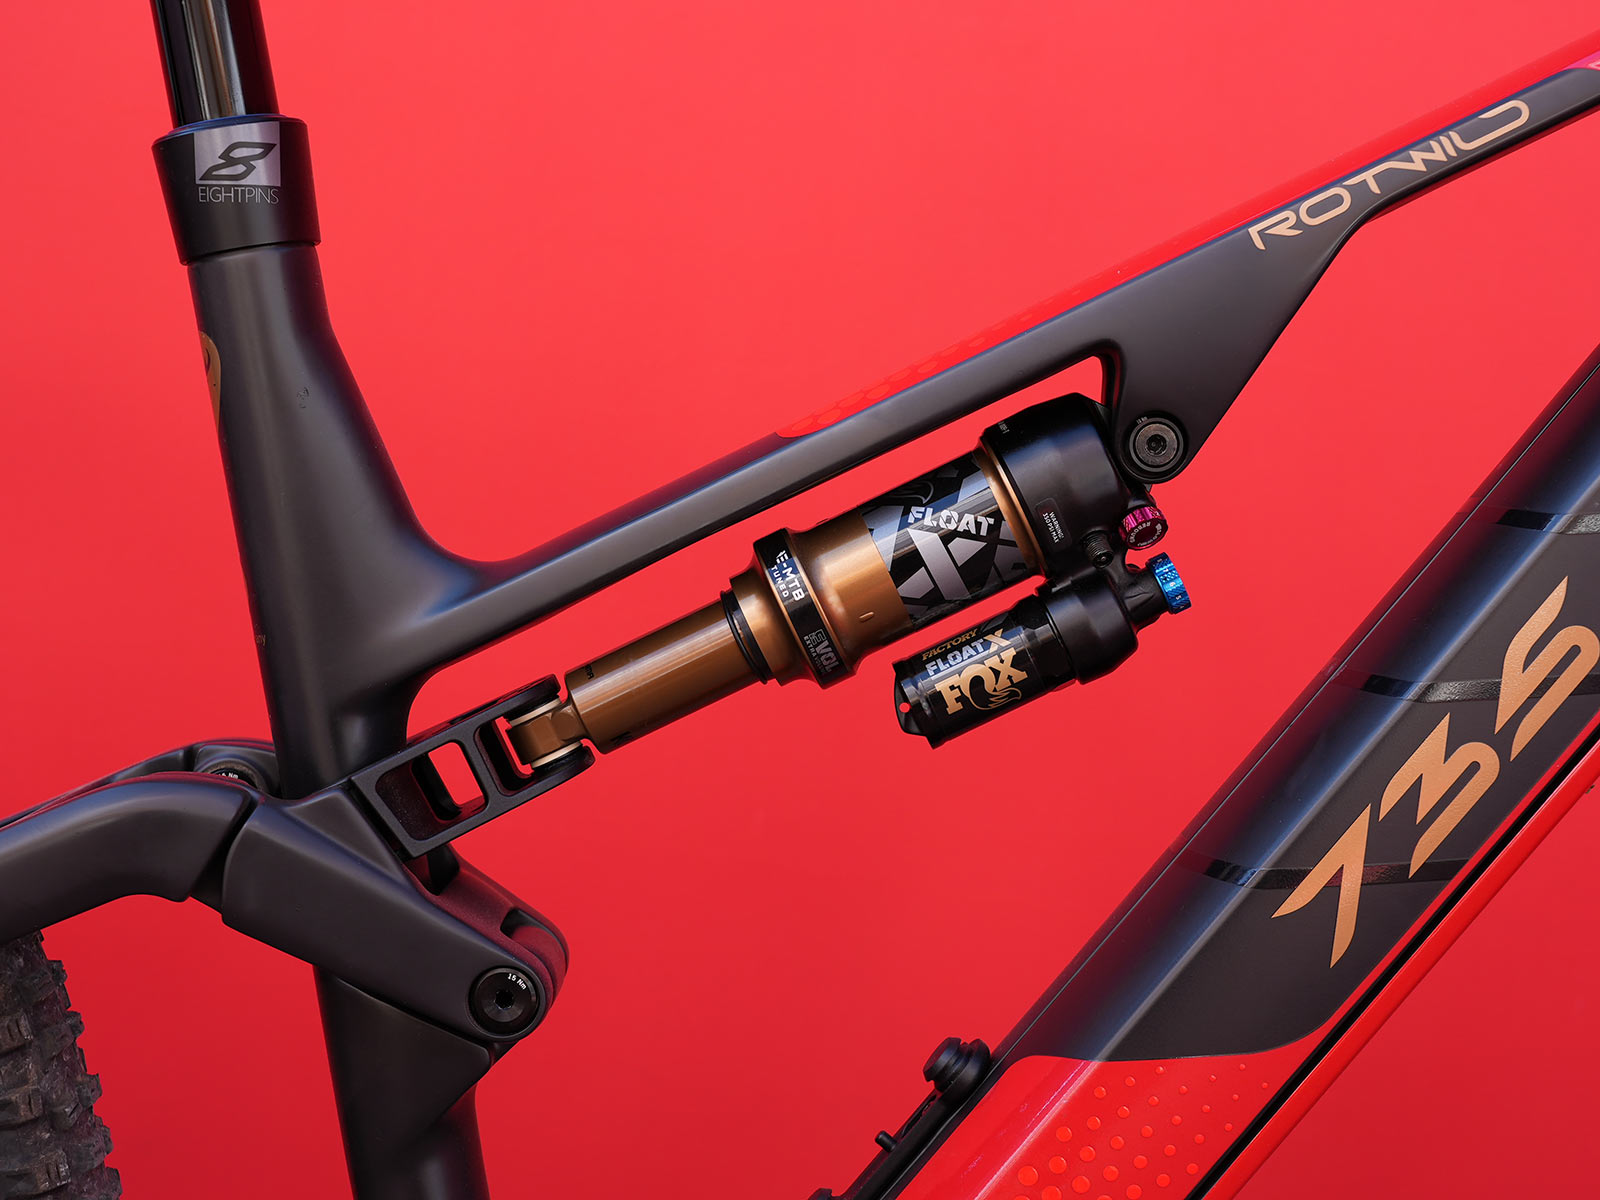 rotwild rx735 lightweight e-mountain bike suspension details